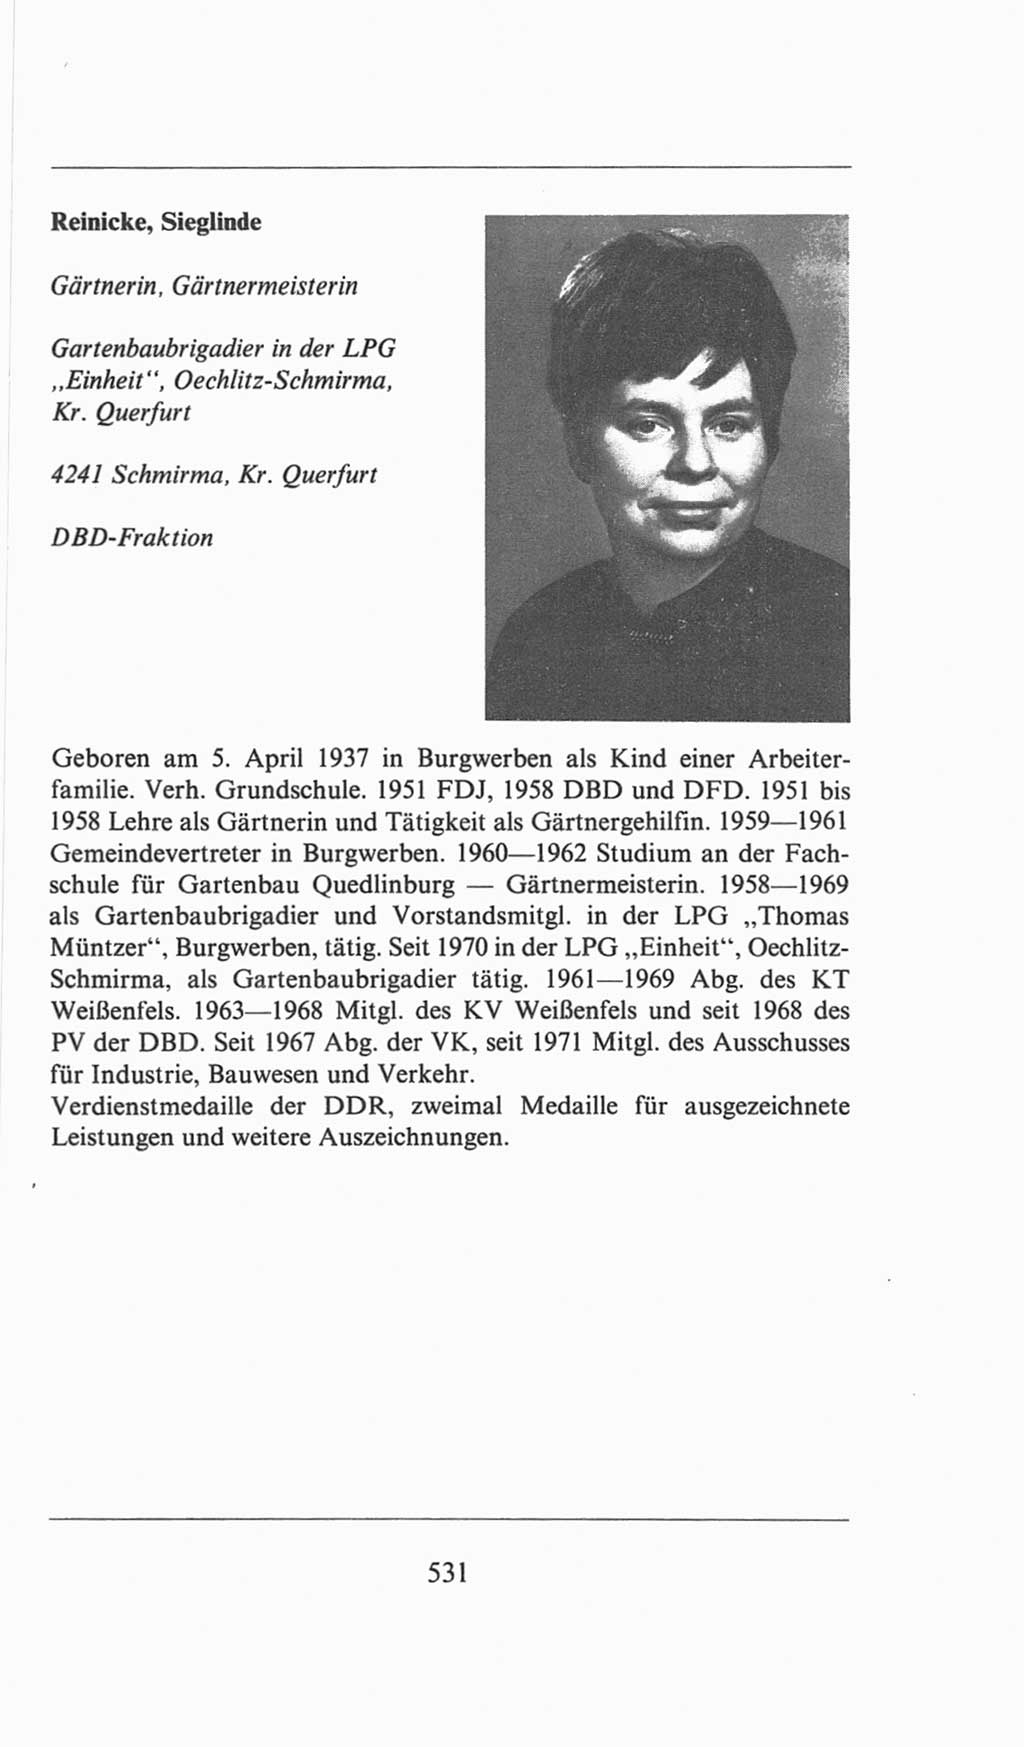 Volkskammer (VK) der Deutschen Demokratischen Republik (DDR), 6. Wahlperiode 1971-1976, Seite 531 (VK. DDR 6. WP. 1971-1976, S. 531)